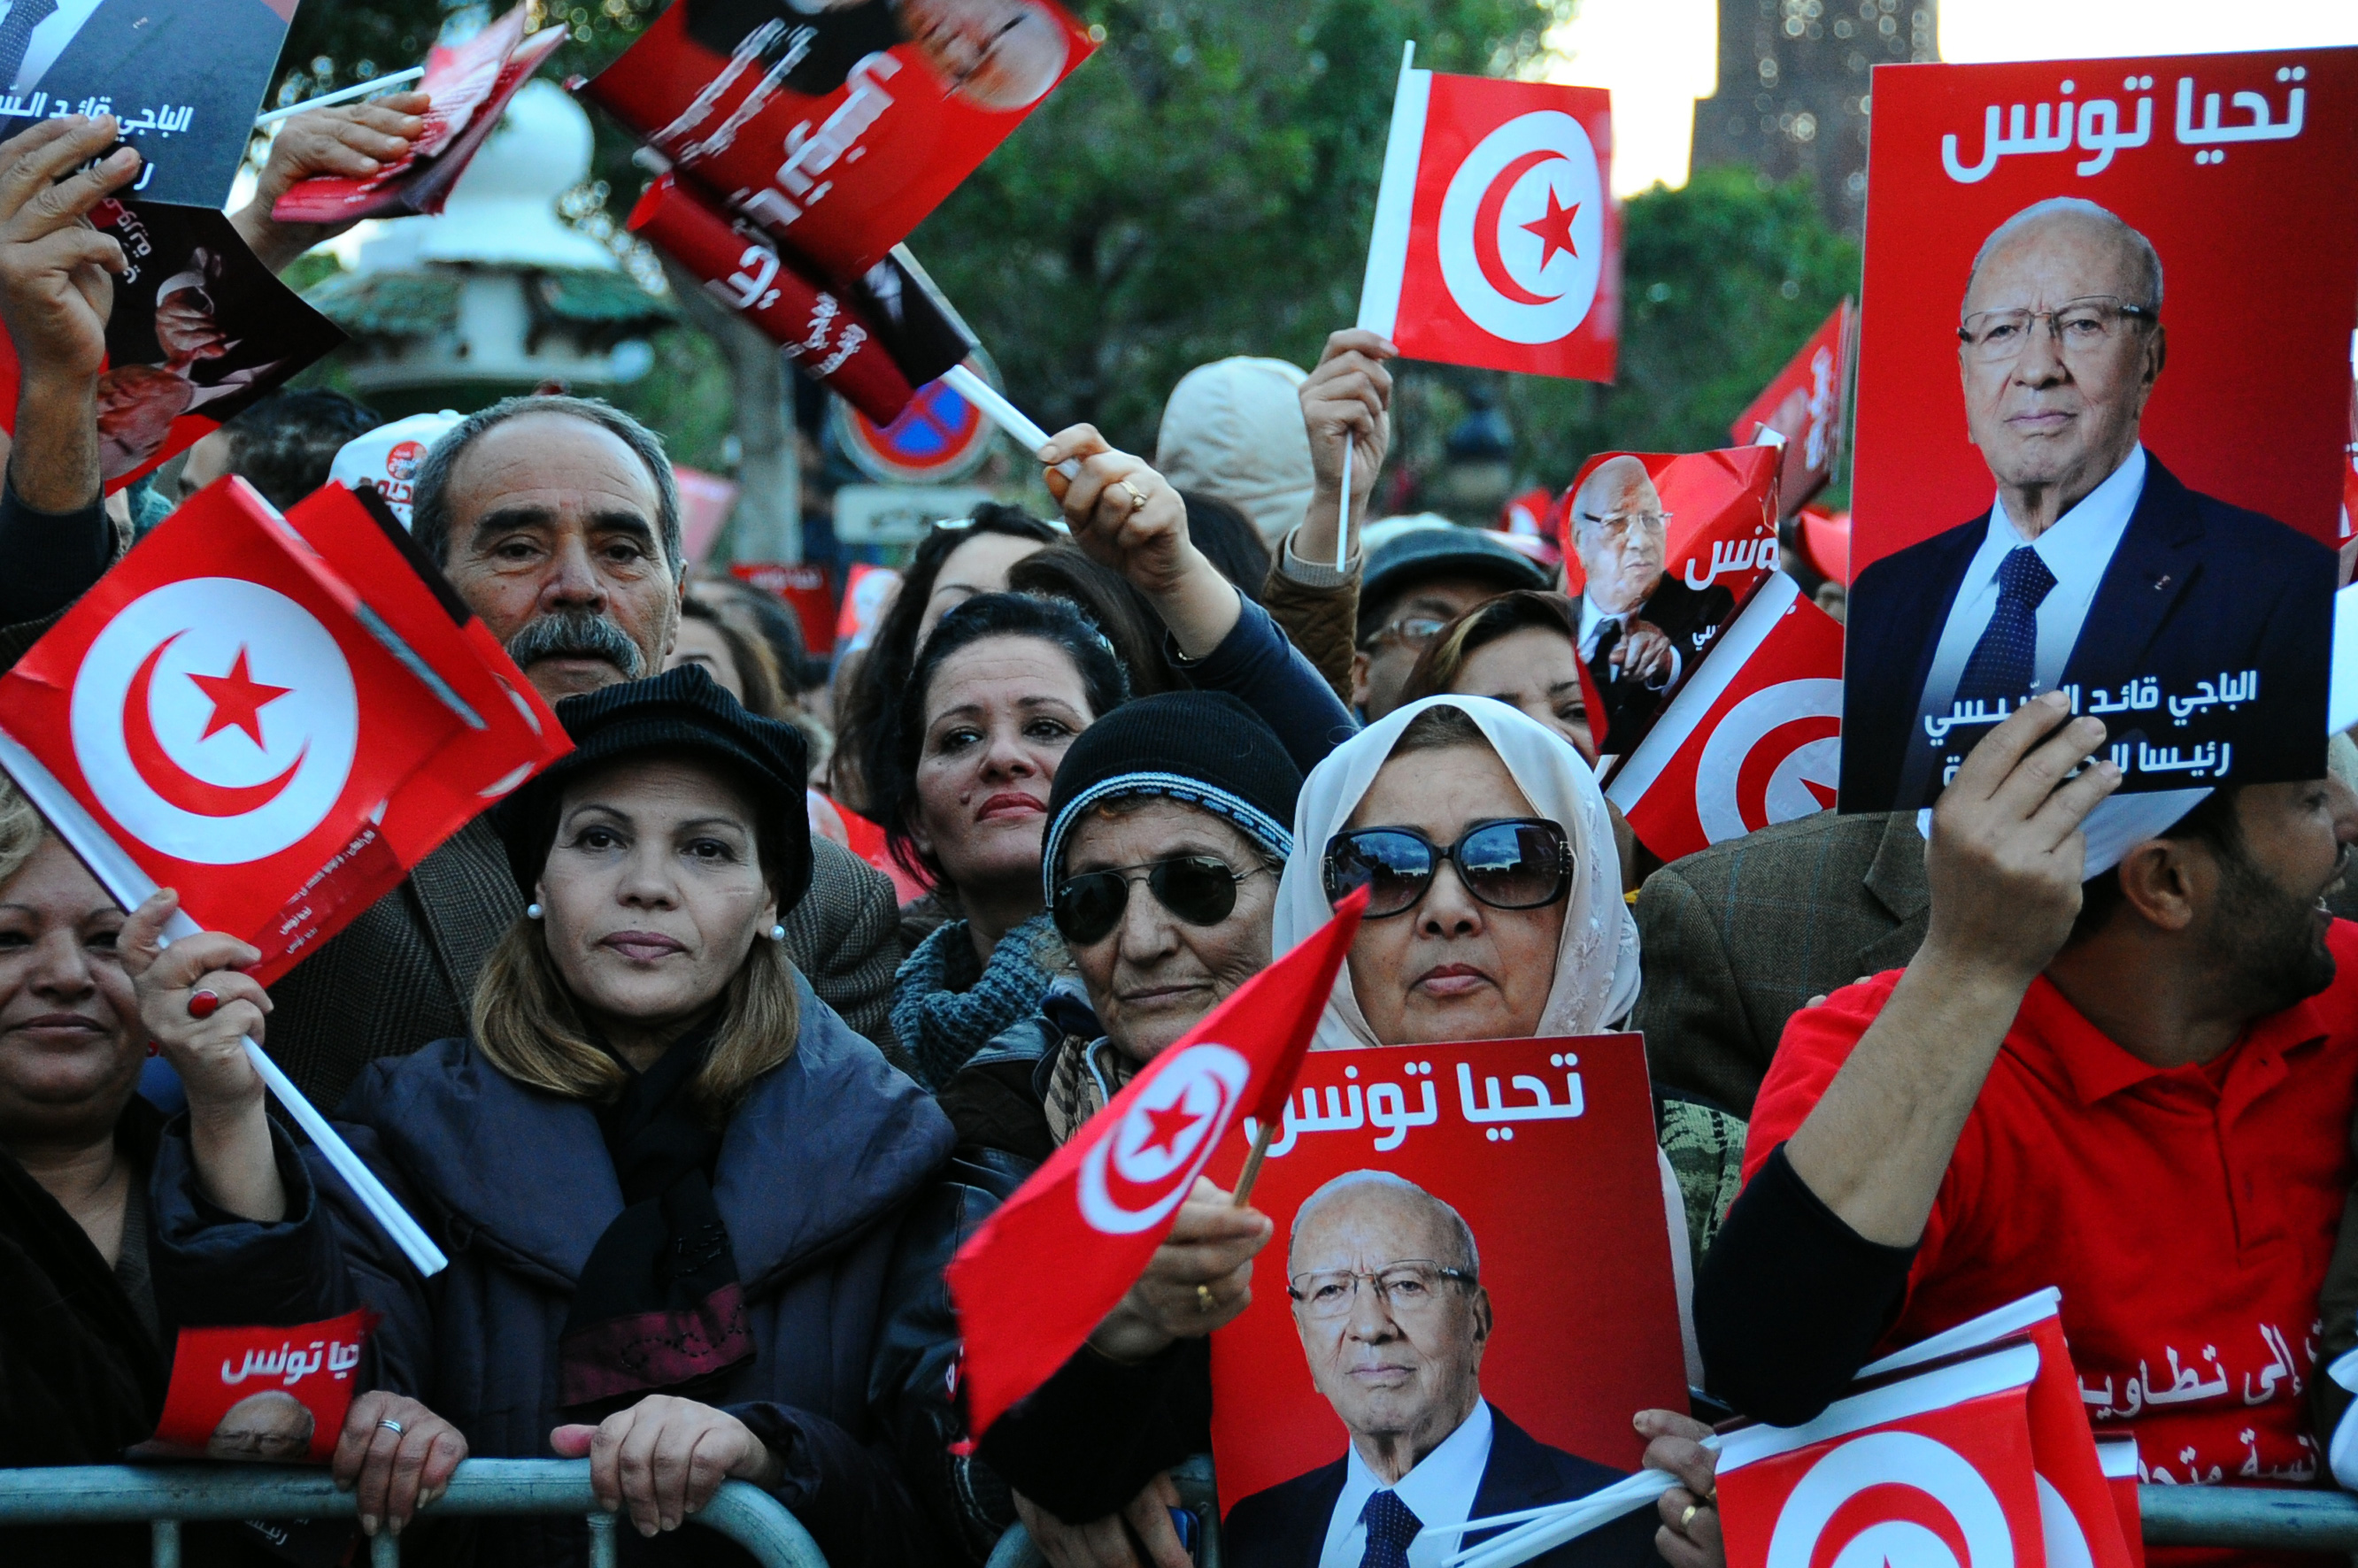 Σε κατάσταση έκτακτης ανάγκης κηρύχθηκε η Τυνησία